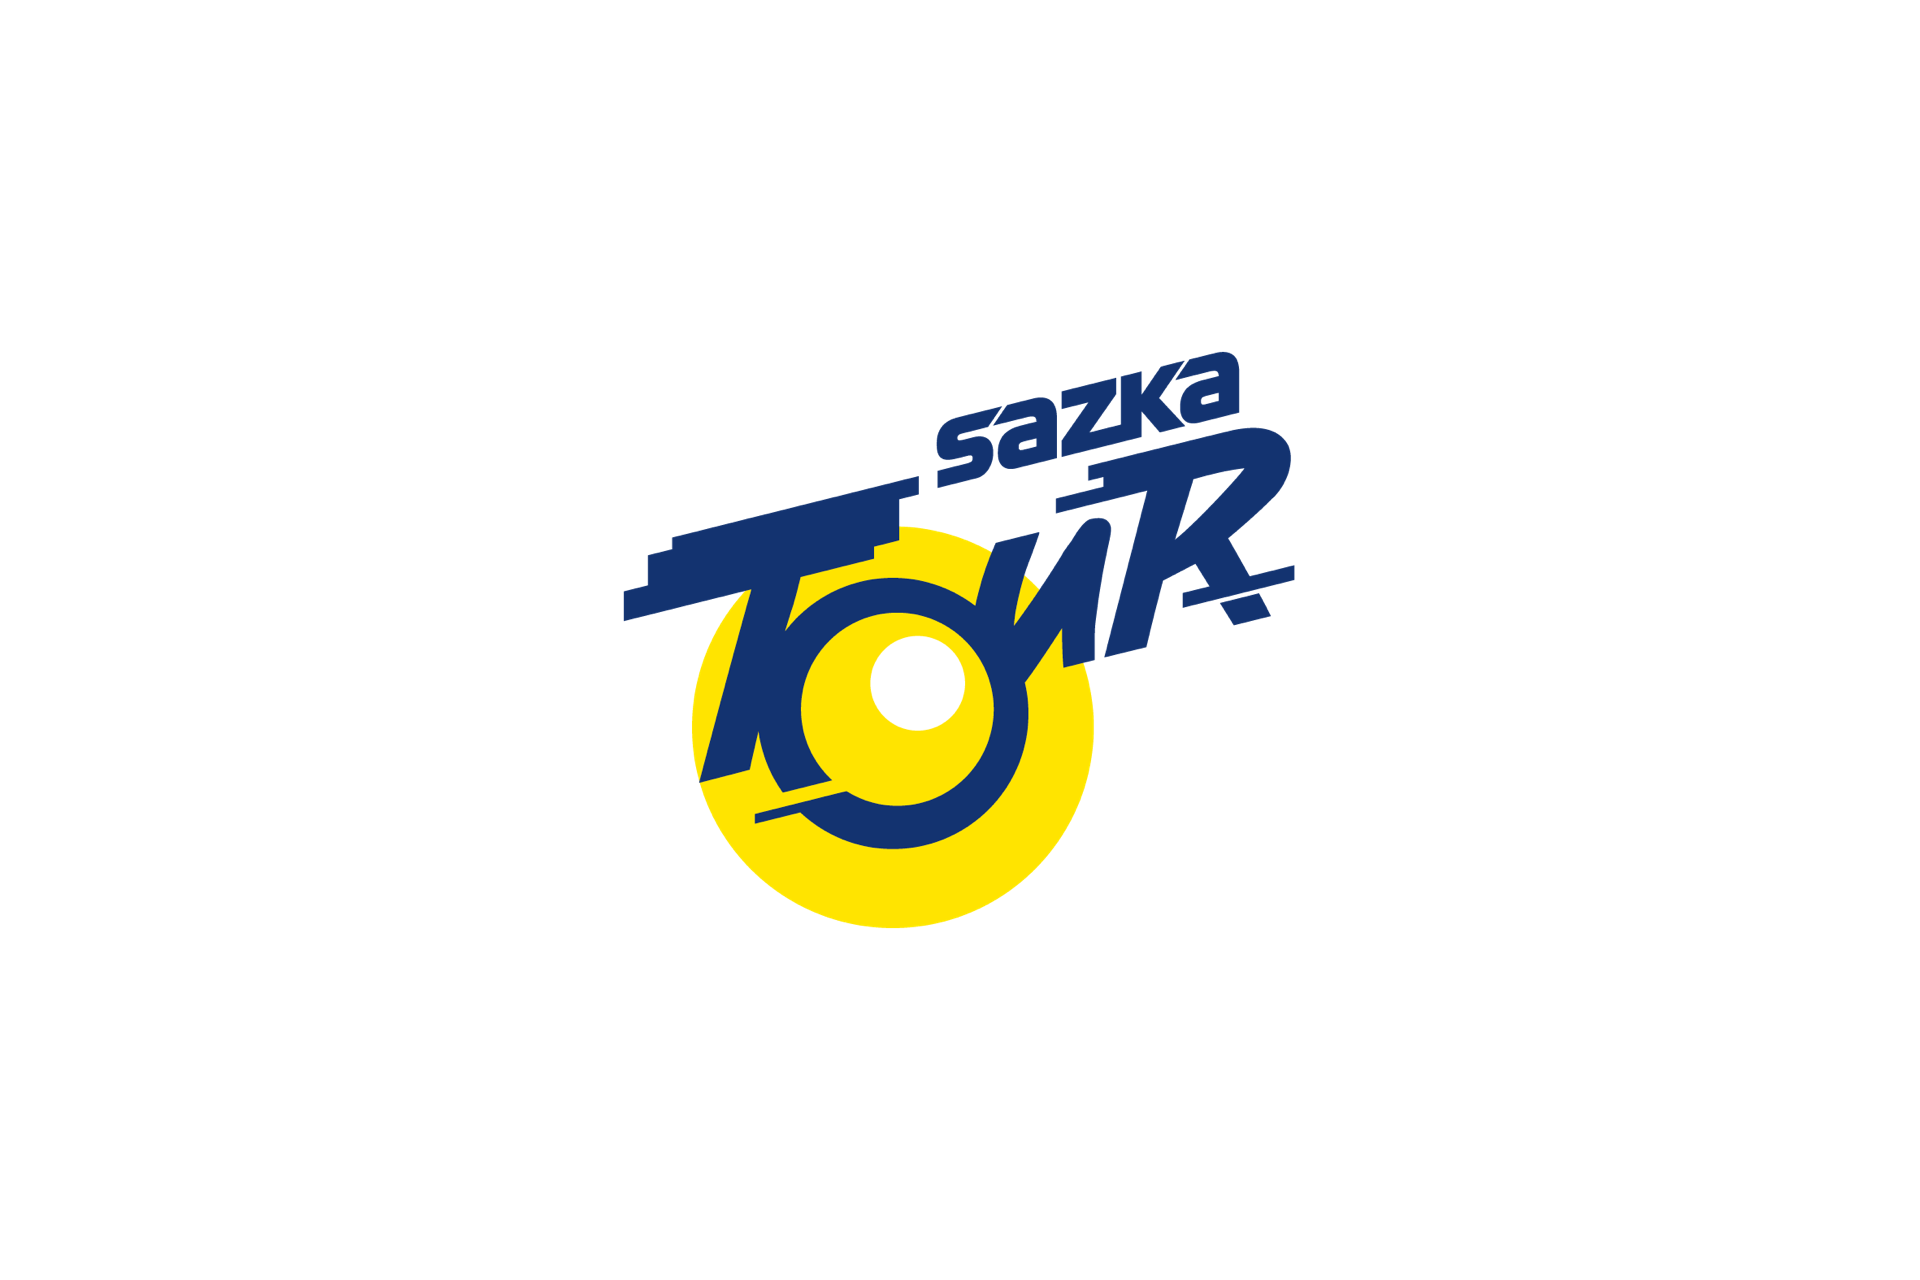 Sazka Tour 2021: etap 4. Ponownie Tobias Halland Johannessen